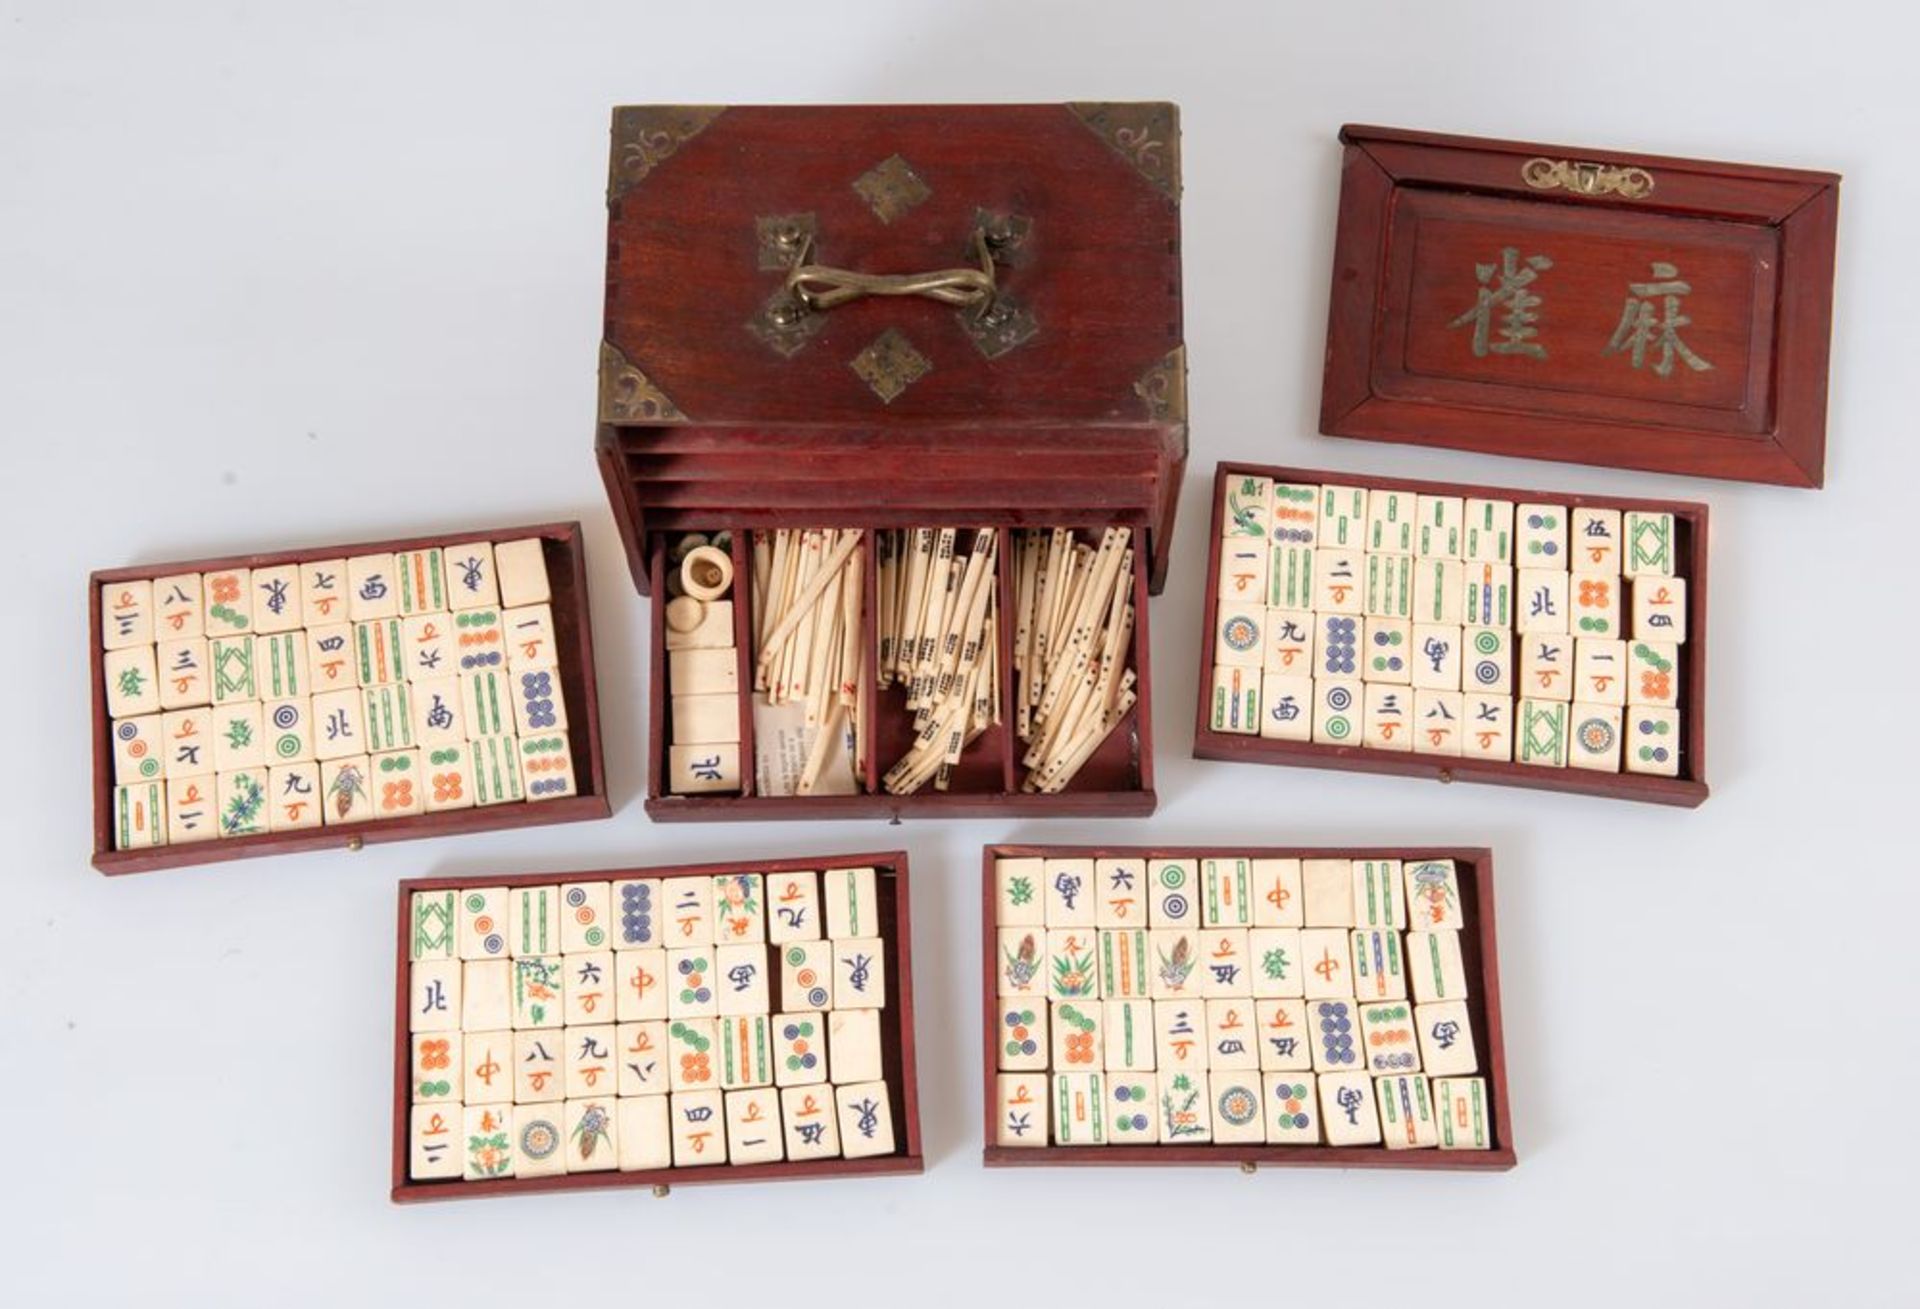 Scatola contenente gioco del MAH JONG in legno con applicazioni in bronzo. Pedine in legno di bamboo - Bild 2 aus 5